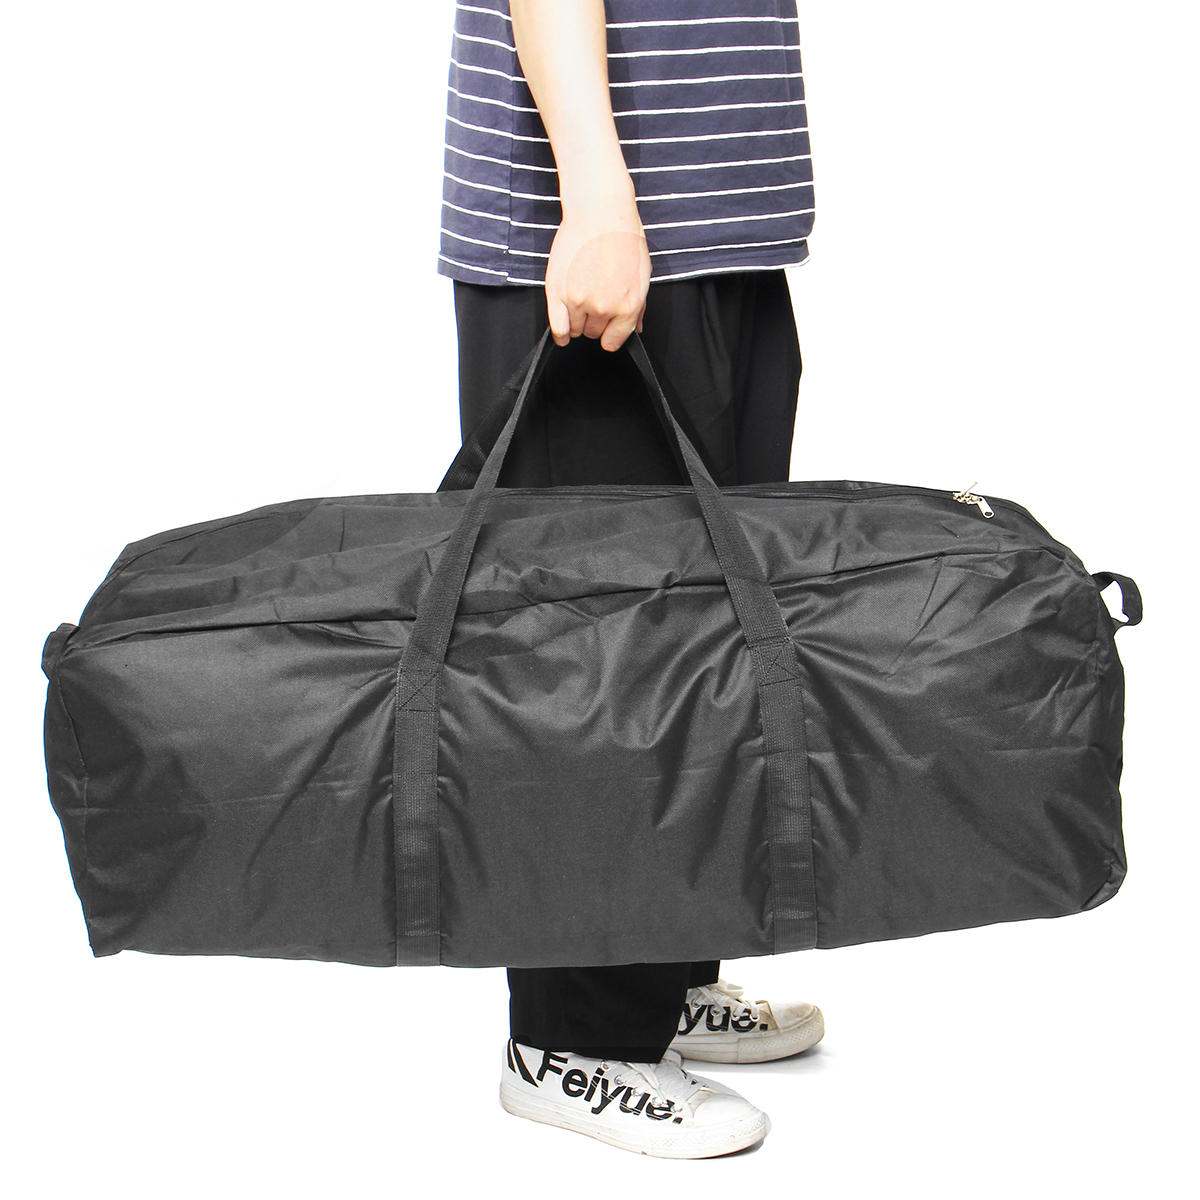 Taşınabilir Katlanır Su Geçirmez Depolama Çanta Outdoor Seyahat Yürüyüş Spor Çantalar Handbags-S / M / L